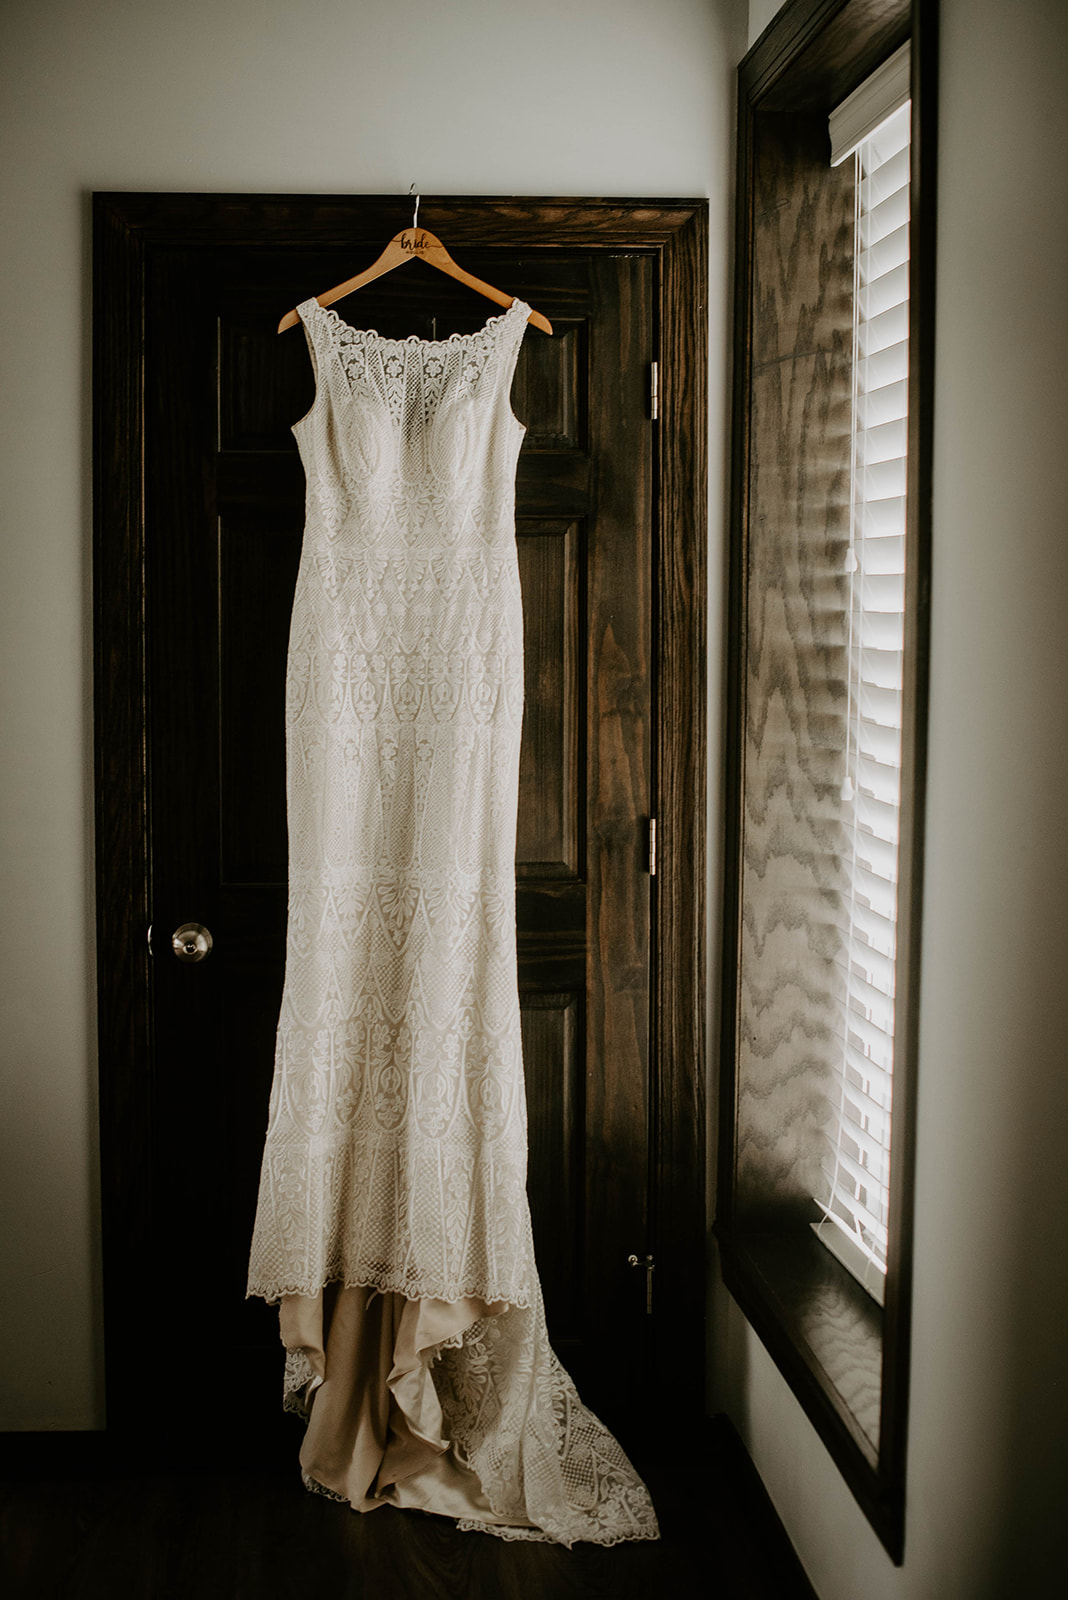 Wedding dress hanging from door. Michigan wedding photographer.